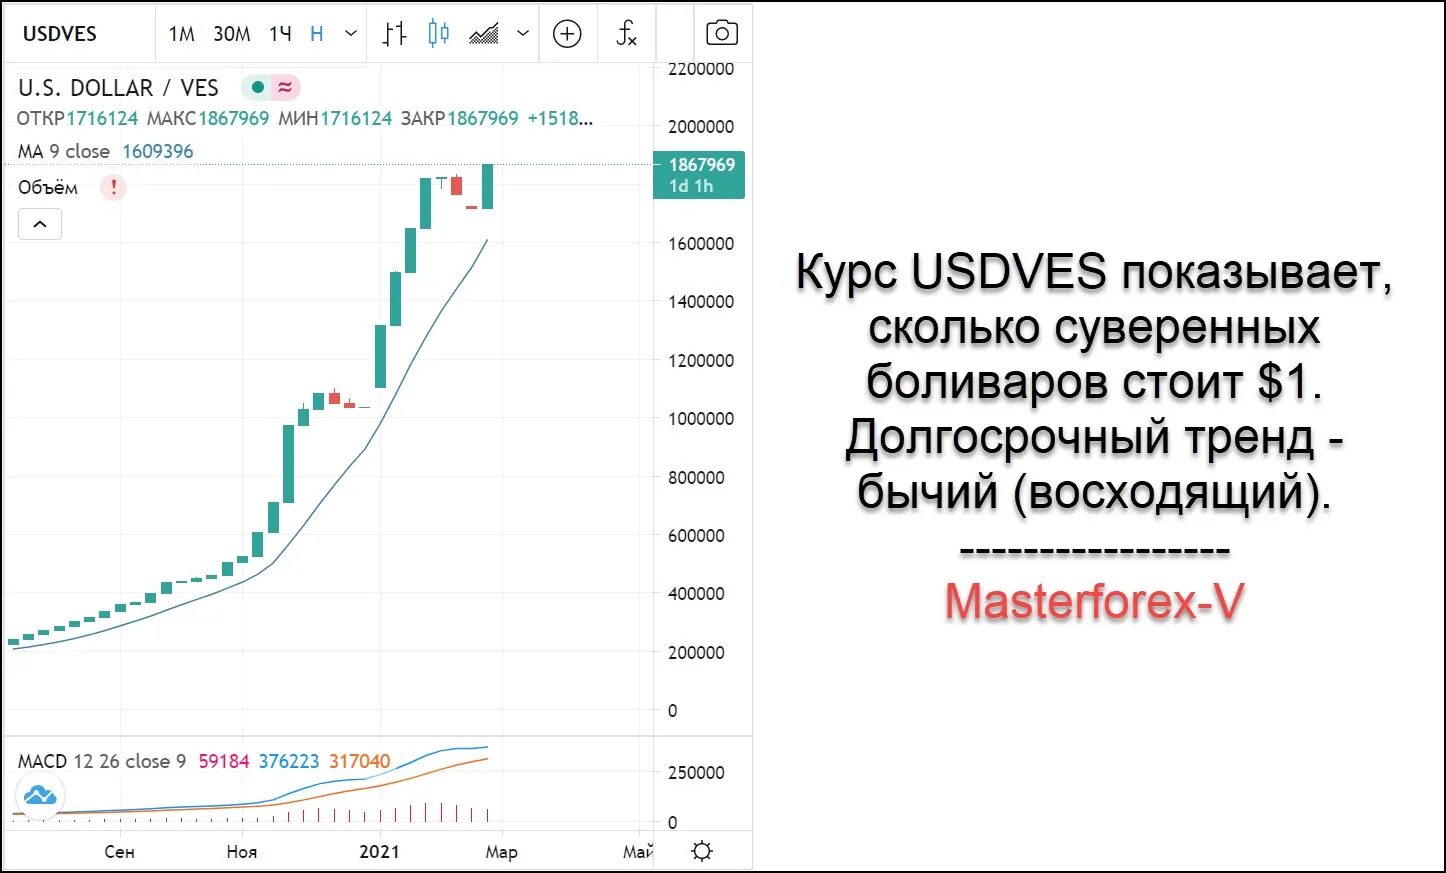 Доллар курс рубля май